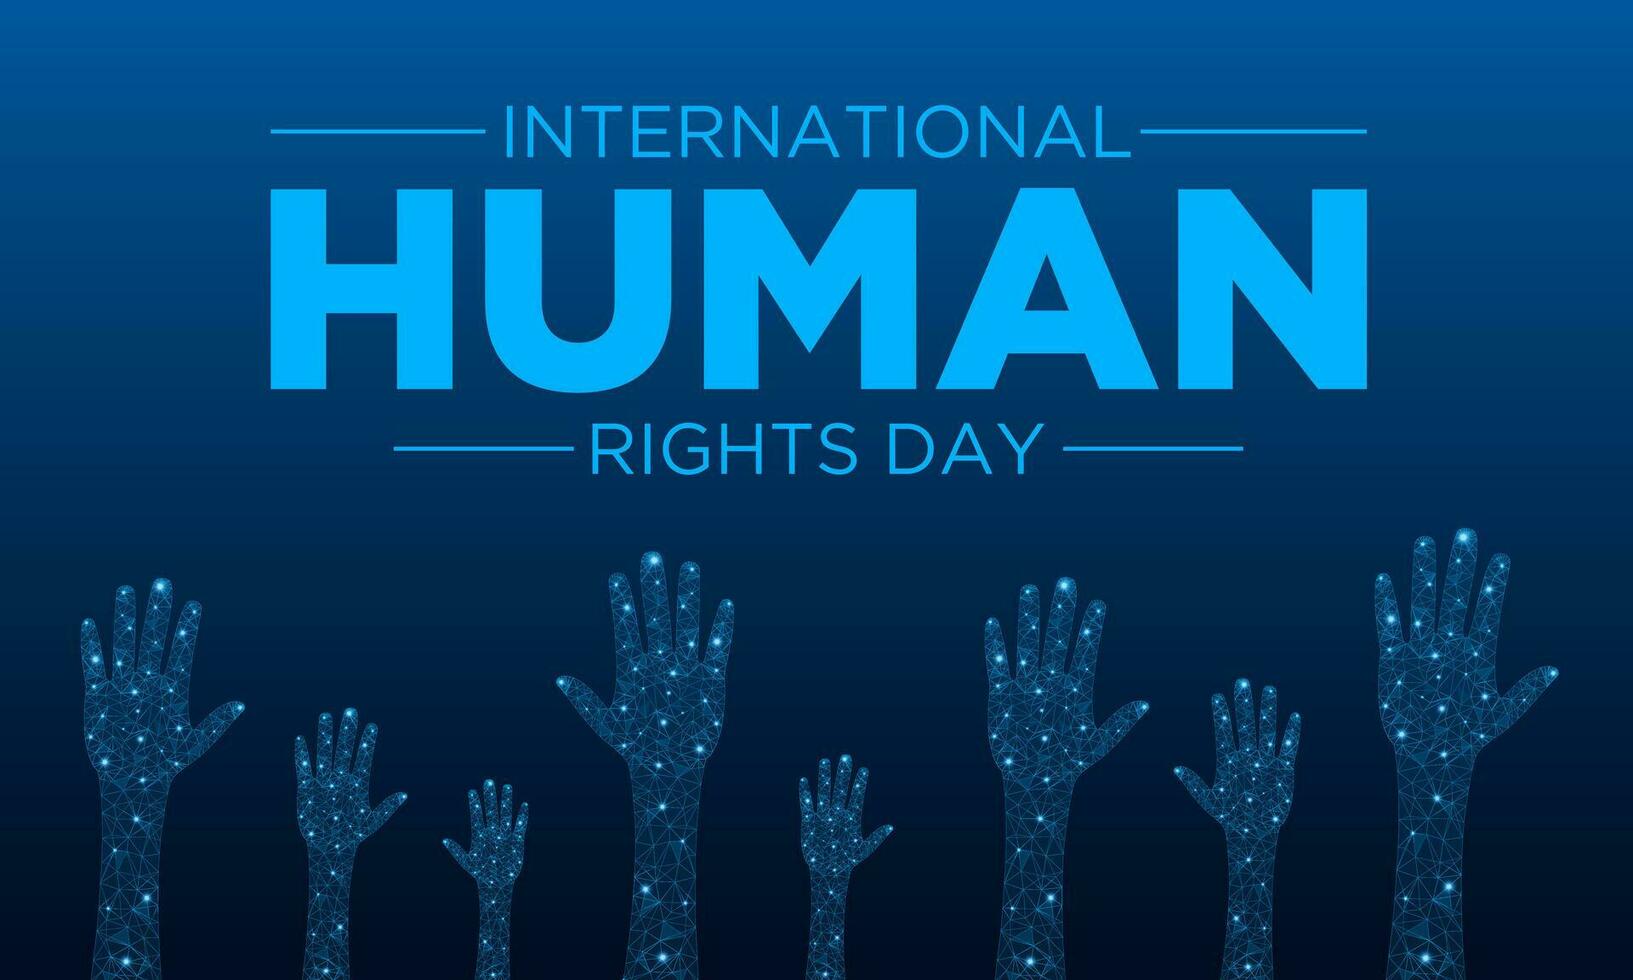 Mensch Rechte Tag ist beobachtete jeder Jahr auf Dezember 10. Vektor Illustration auf das Thema von International Mensch Rechte Tag. Vorlage zum Banner, Gruß Karte, Poster mit Hintergrund.